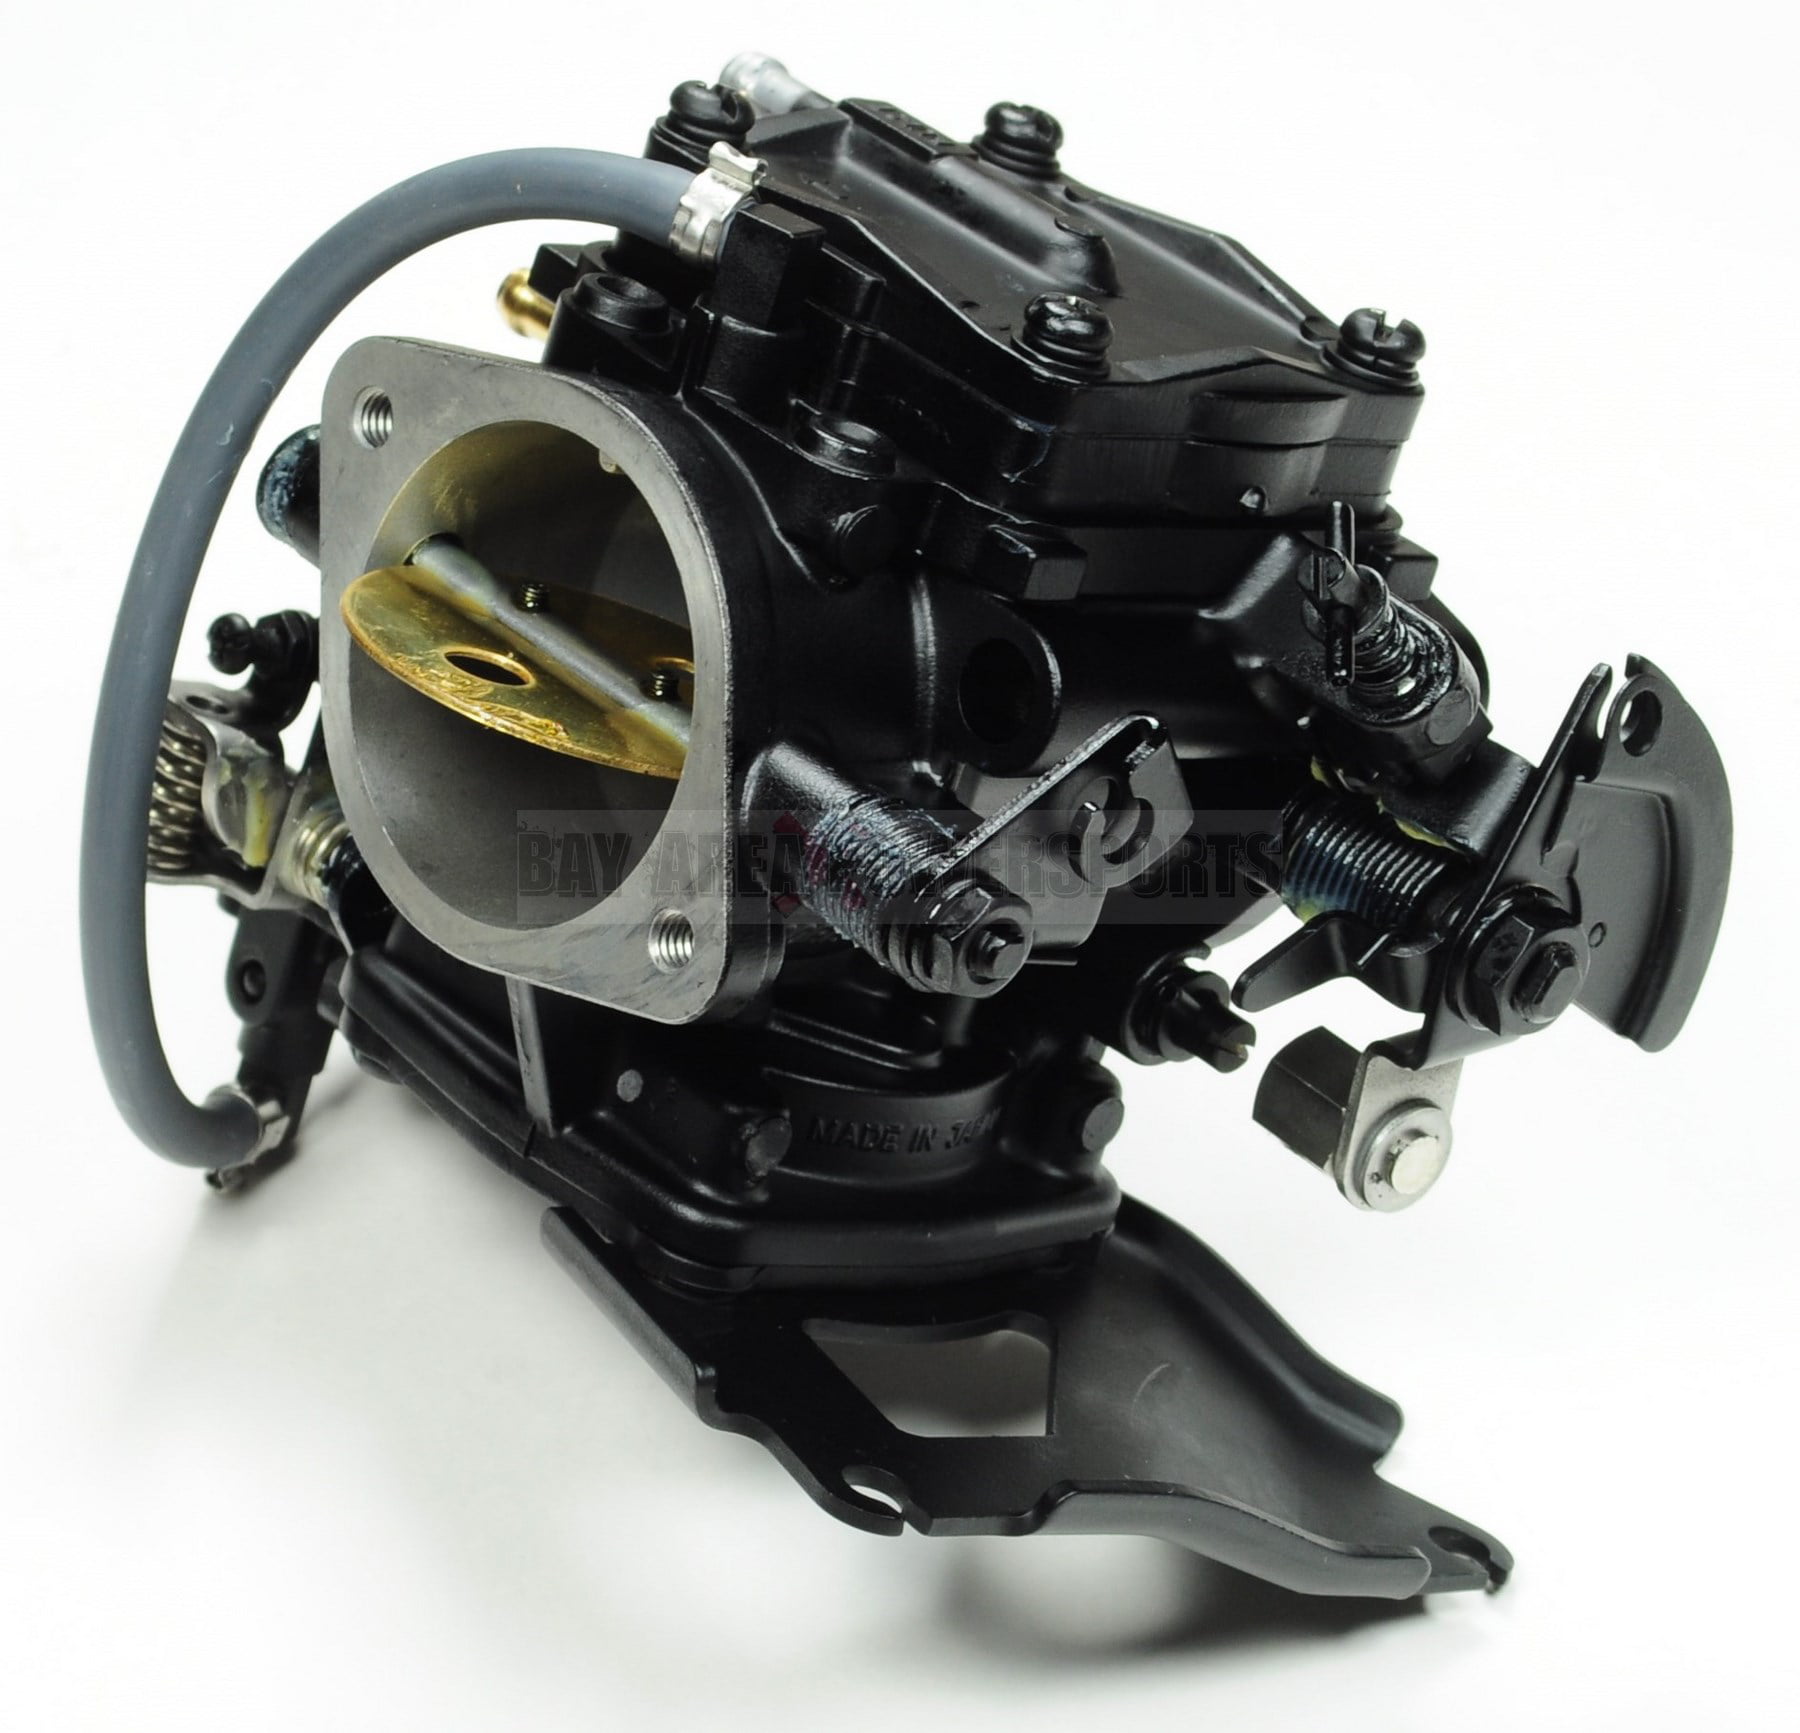 580/650/717 Kit de reconstrucción de carburador para Sea Doo Mikuni 720 787 800 GTI GTS GTX SP SPX XP